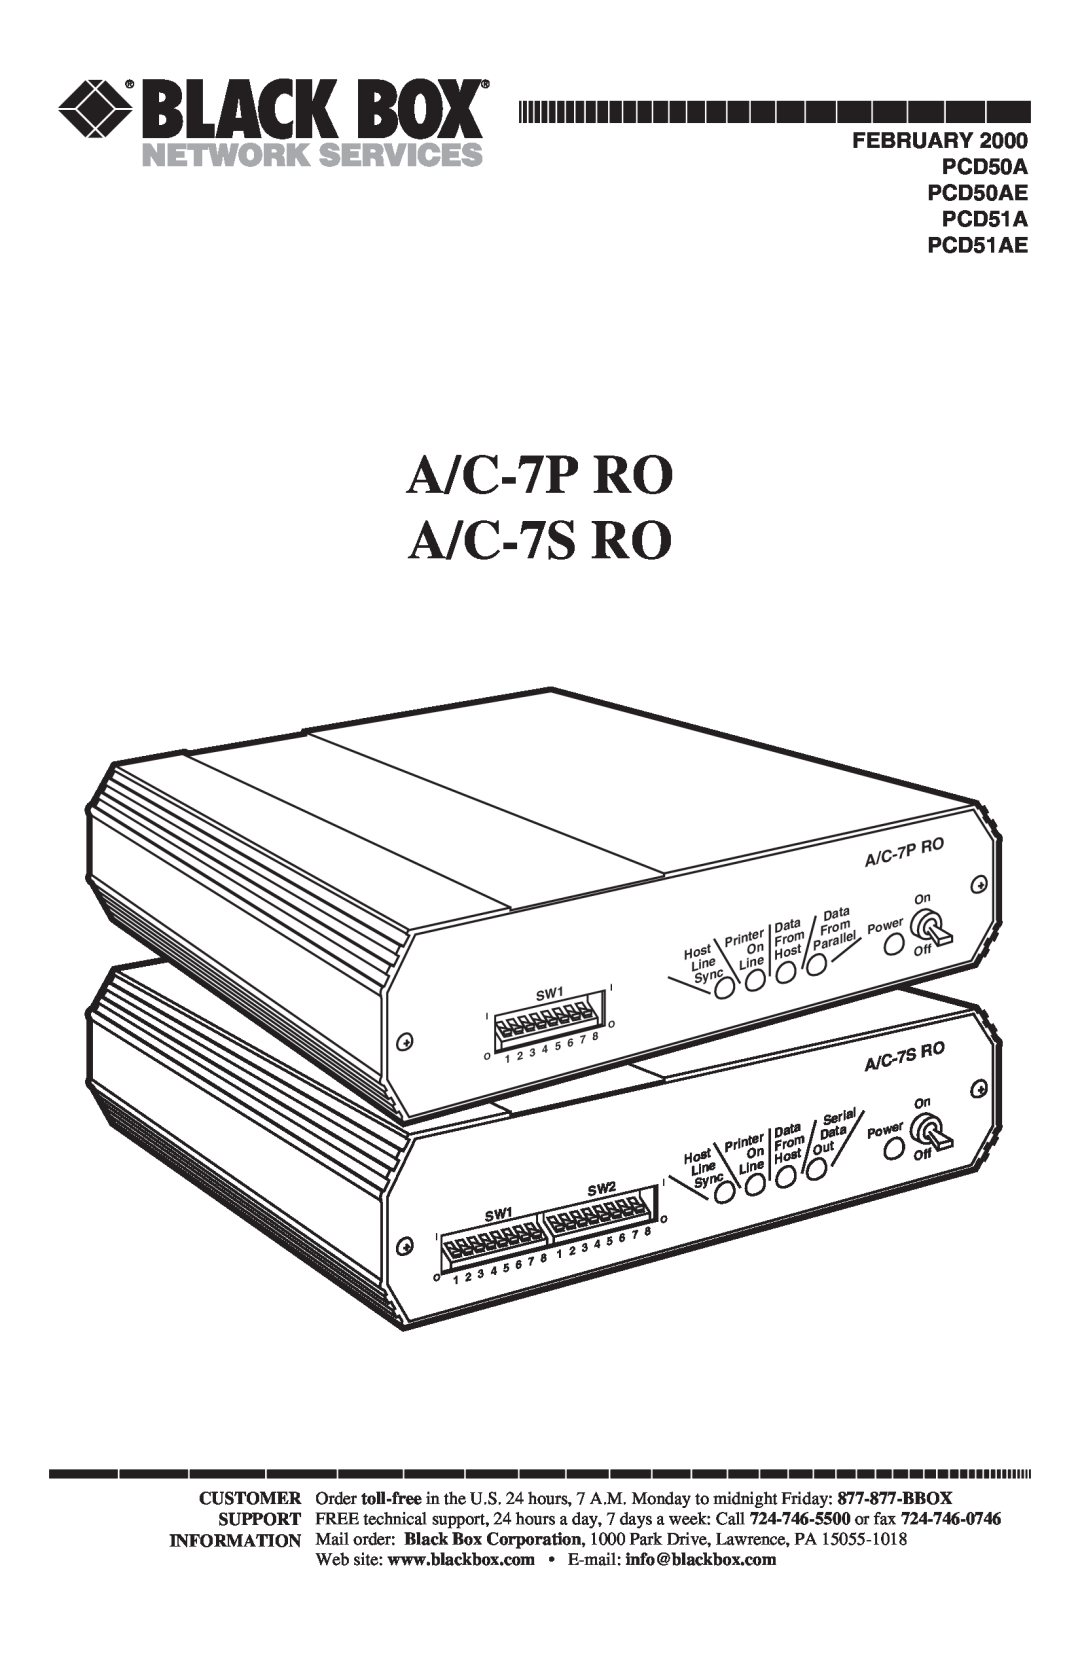 Black Box manual A/C-7P RO A/C-7S RO, From, Host, Line Line, Serial, Data Data 